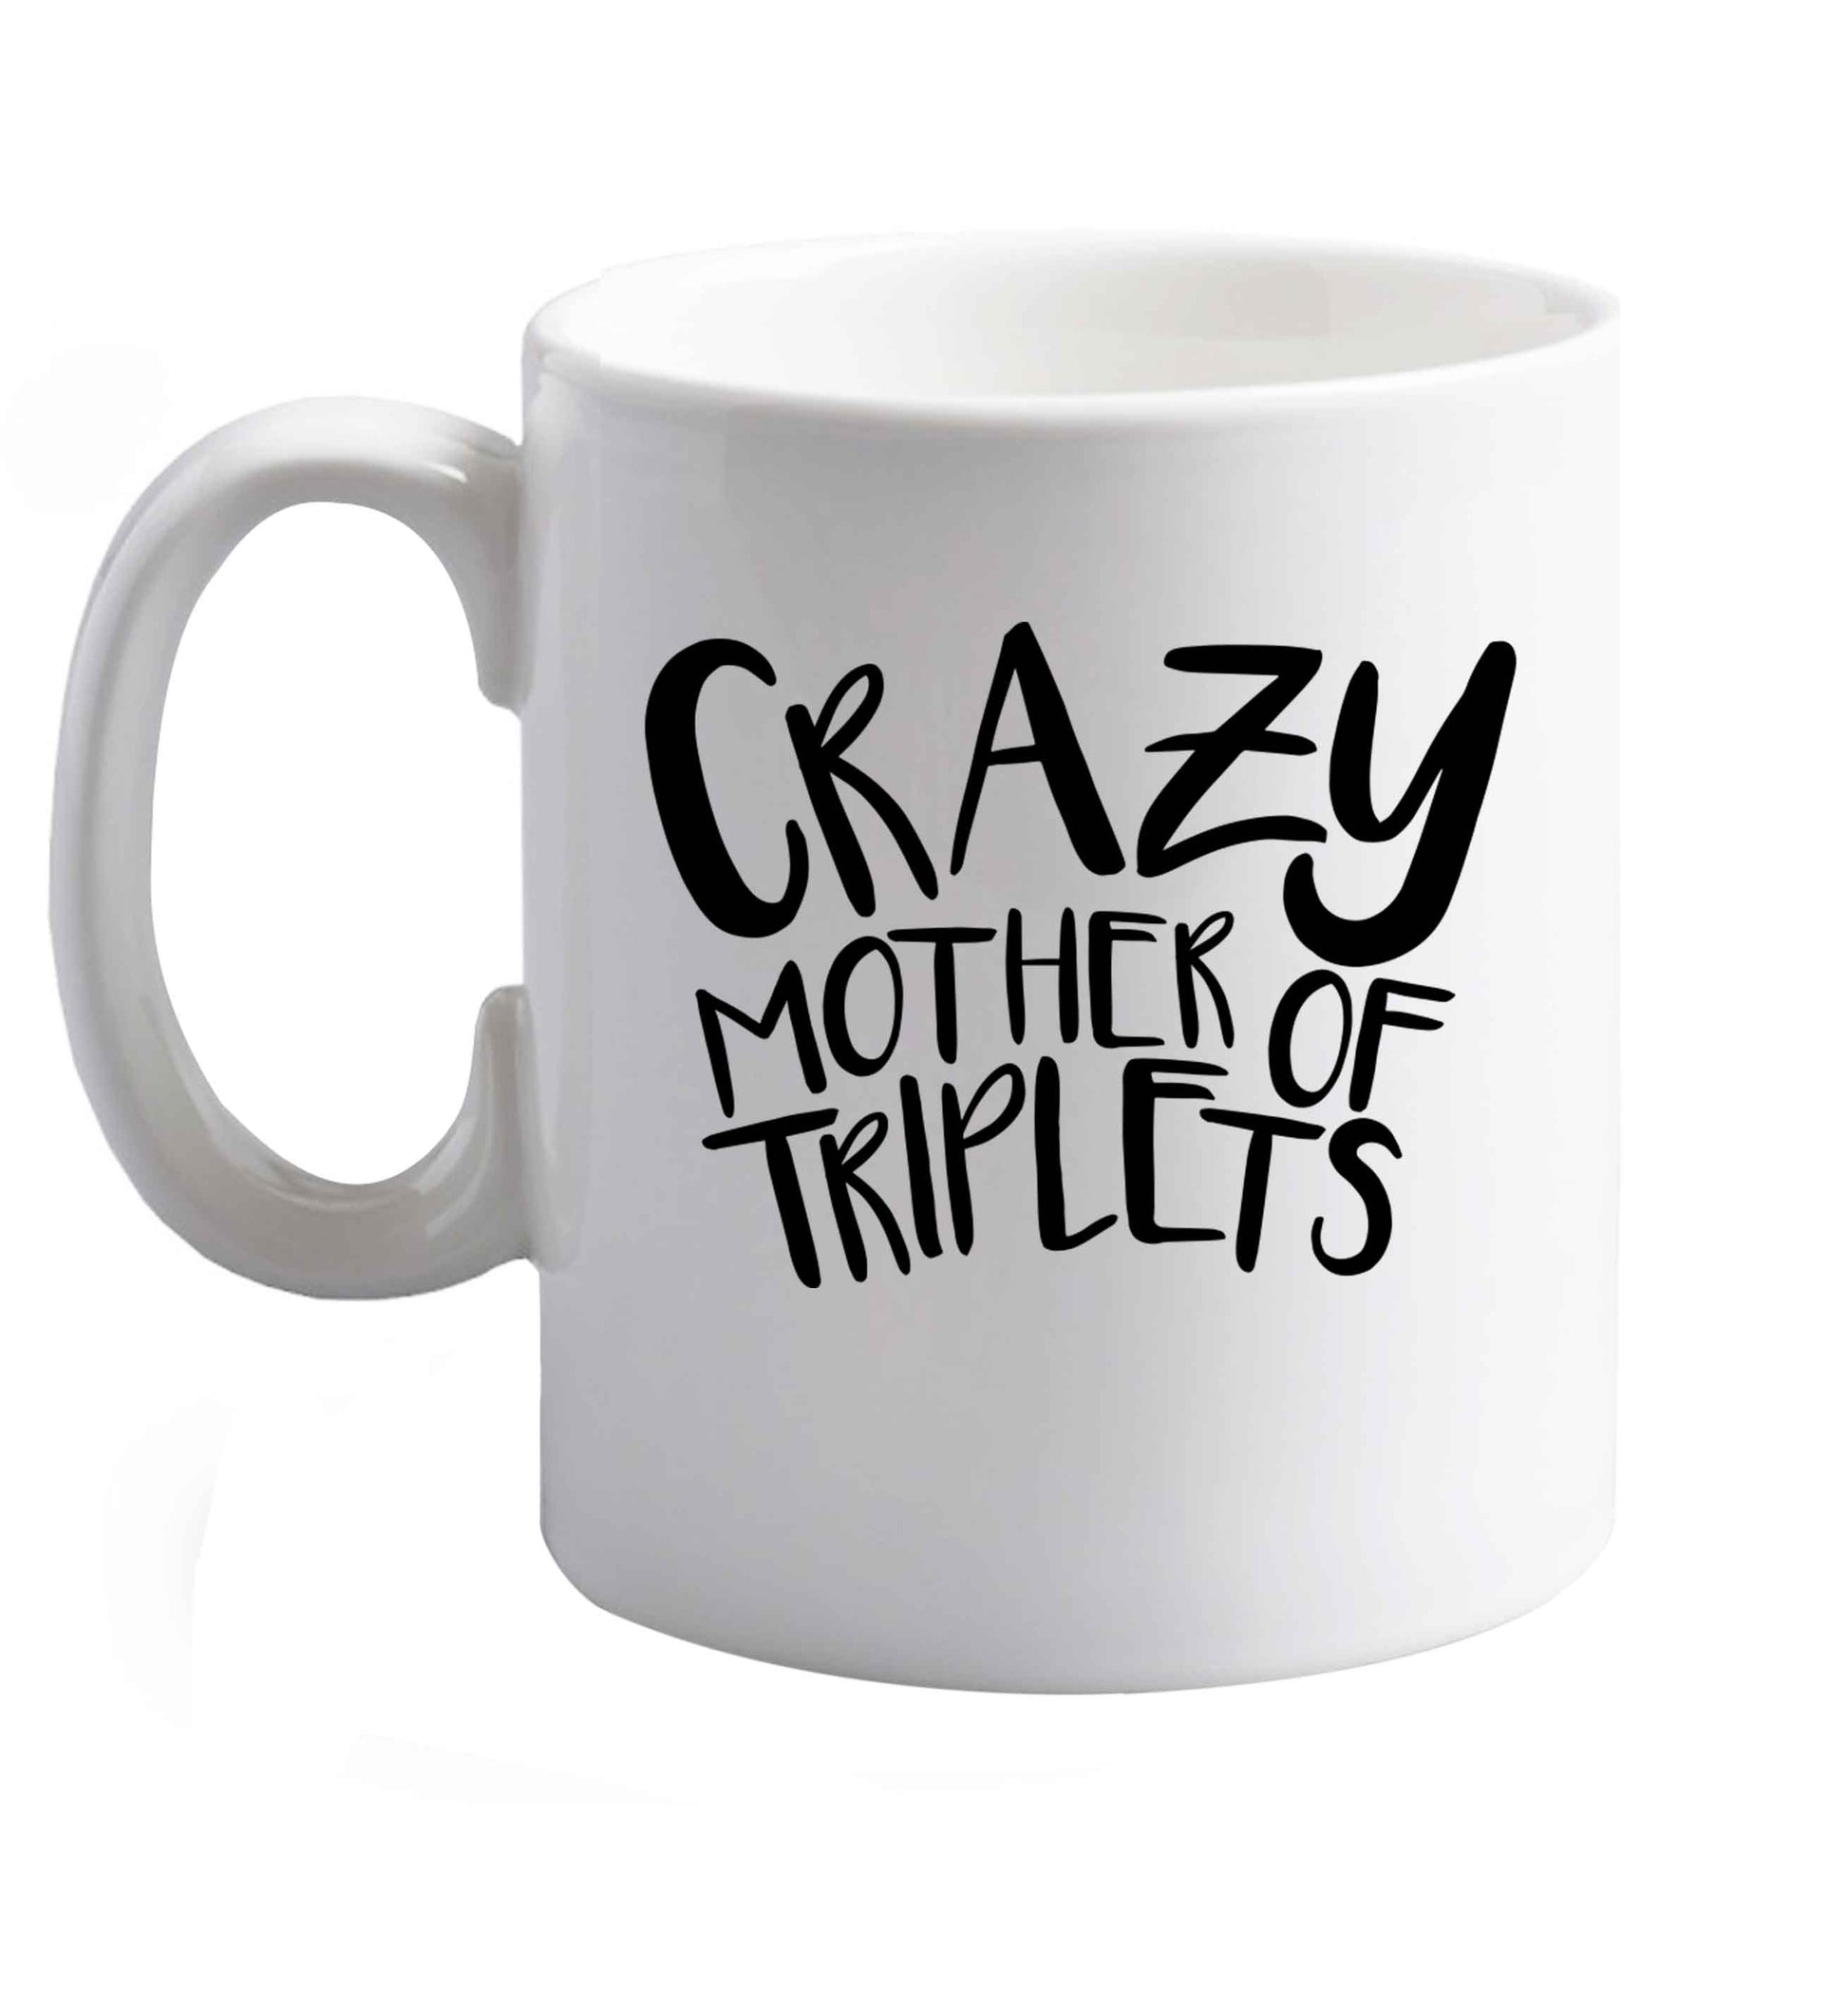 10 oz Crazy mother of triplets ceramic mug right handed